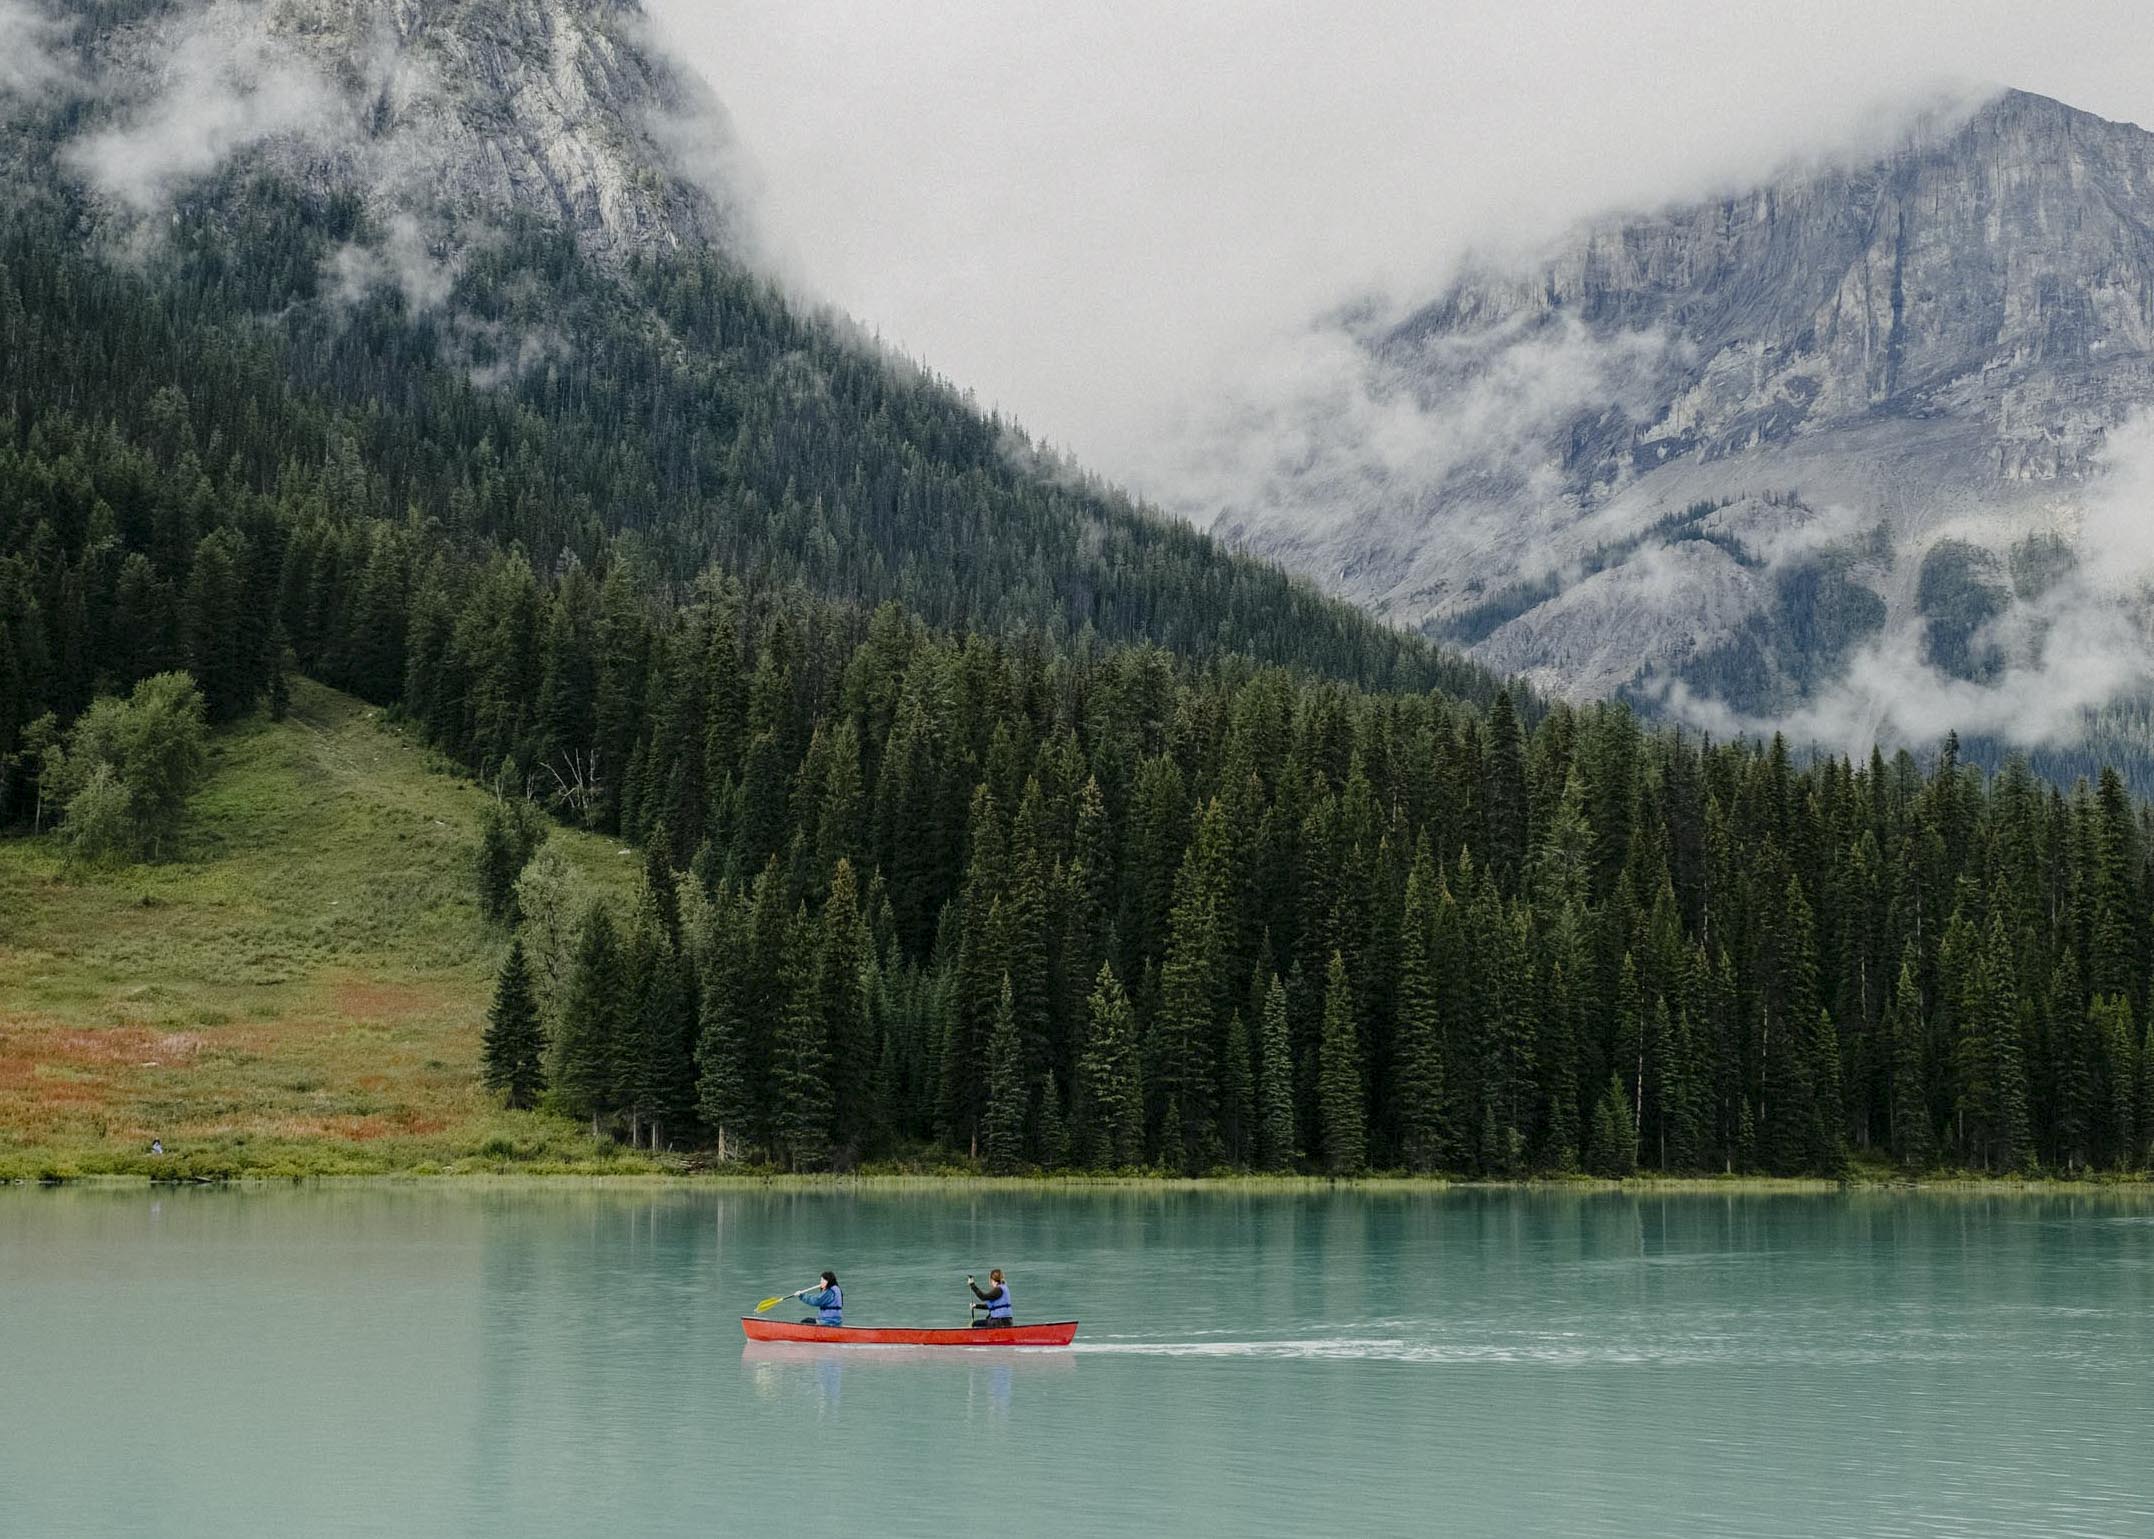 Canoe paddling Emerald Lake, BC